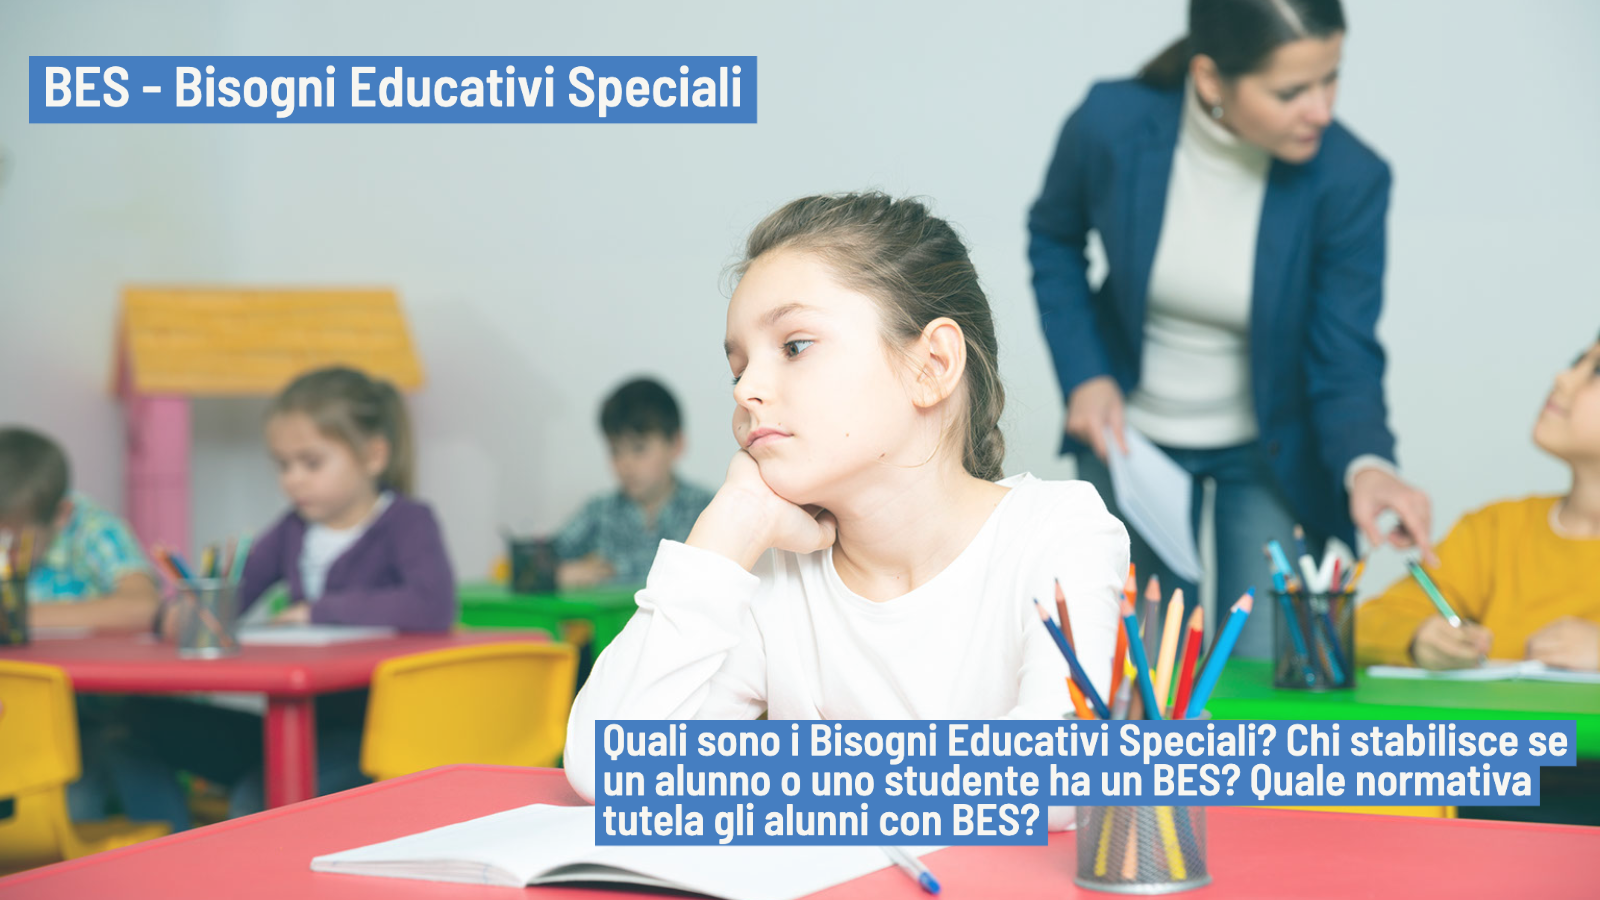 Bisogni Educativi Speciali - BES definizione, certificazione e normative